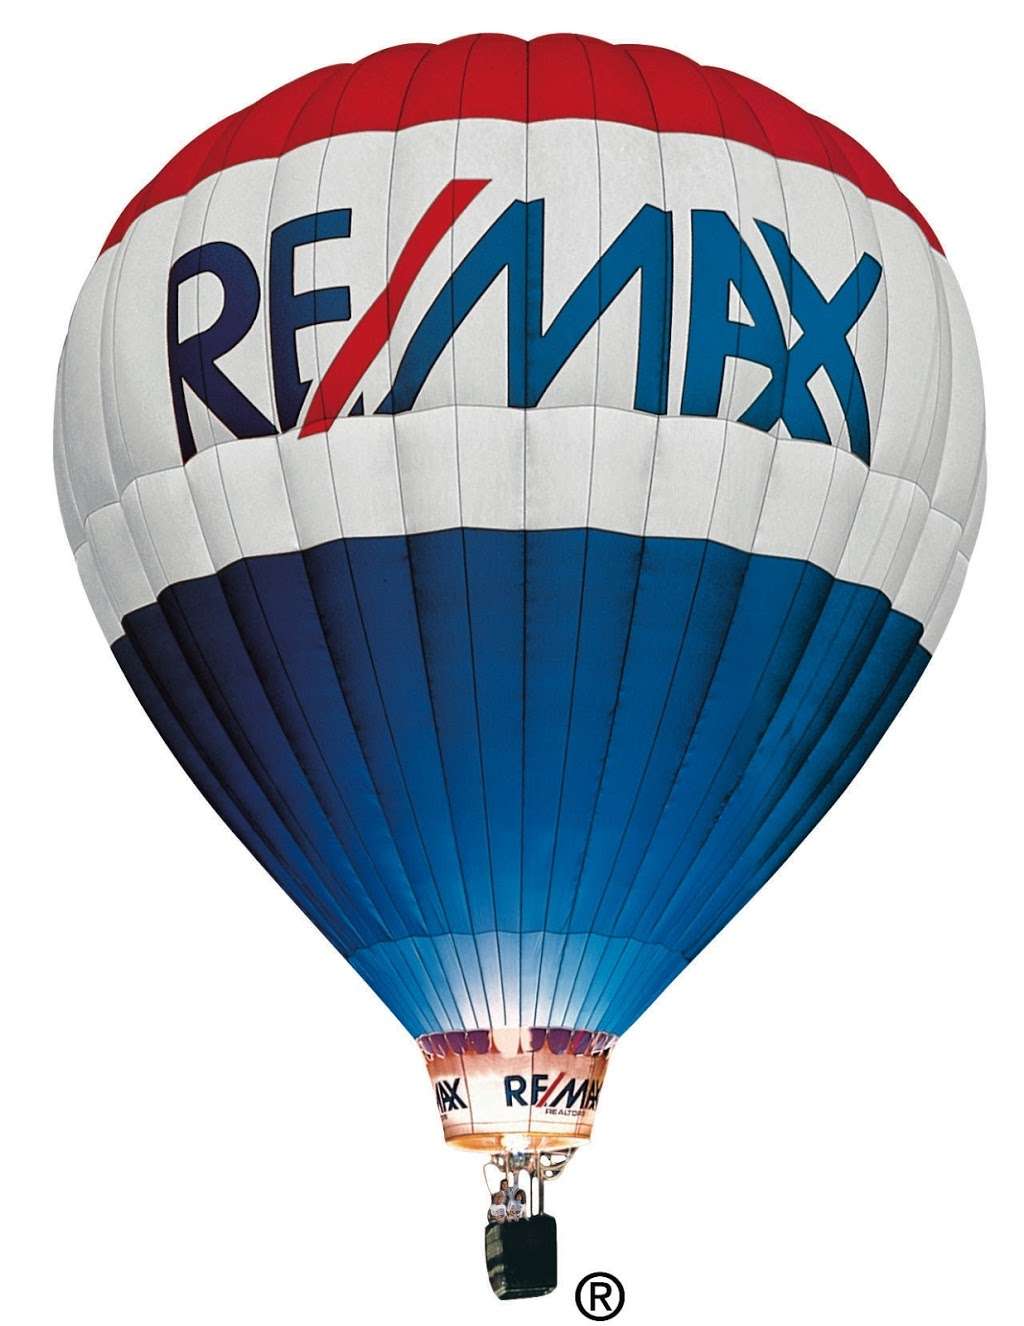 REMAX Lifetime Realtors | 605 Chestnut St, Union, NJ 07083 | Phone: (908) 688-2828